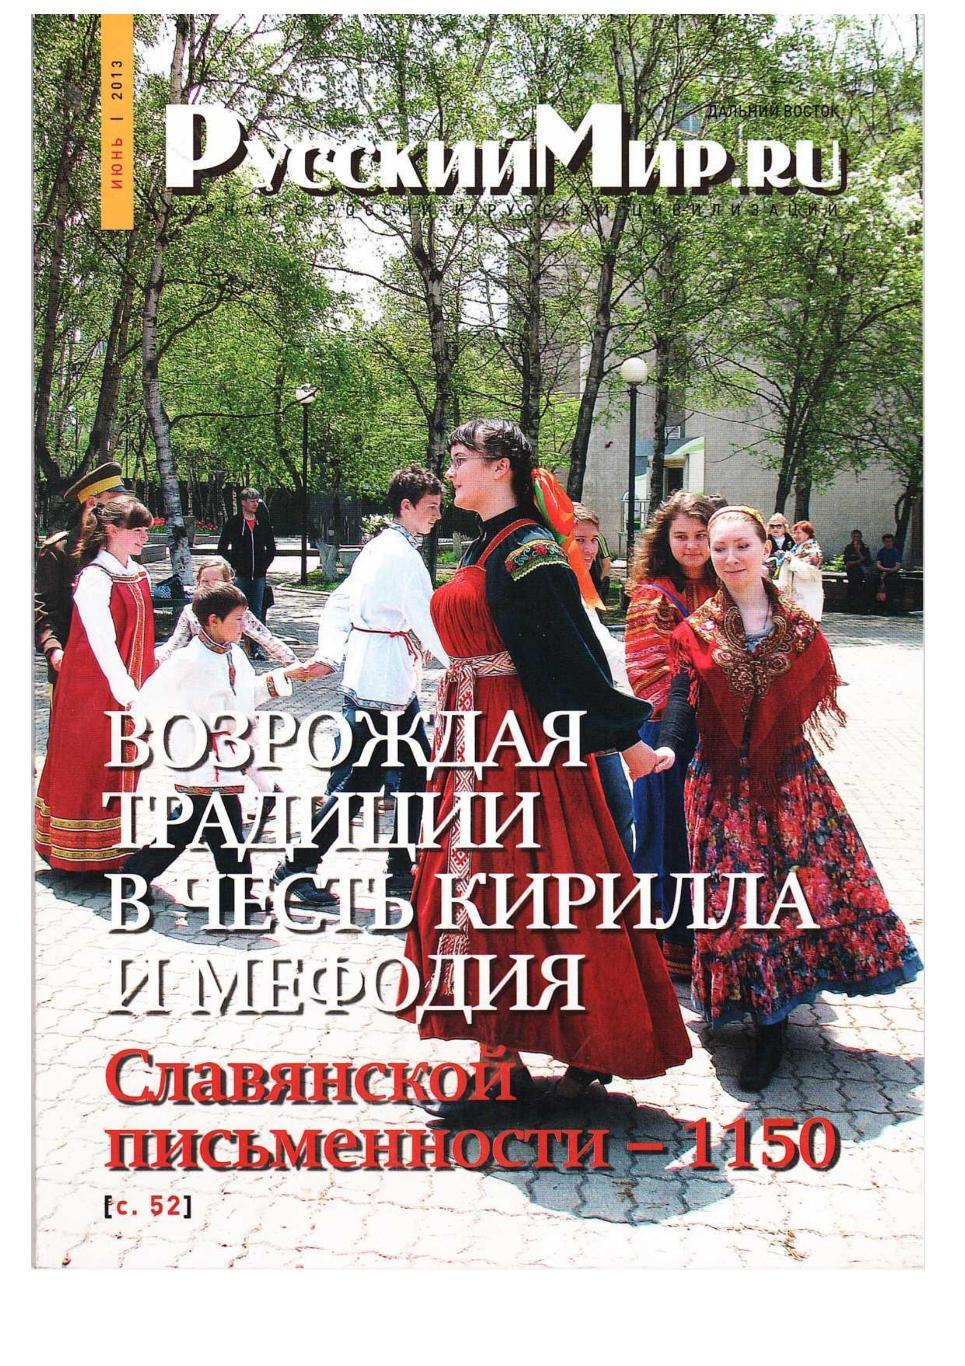 Русский мир.ru. Журнал о России и русской цивилизации. – 2013, июнь